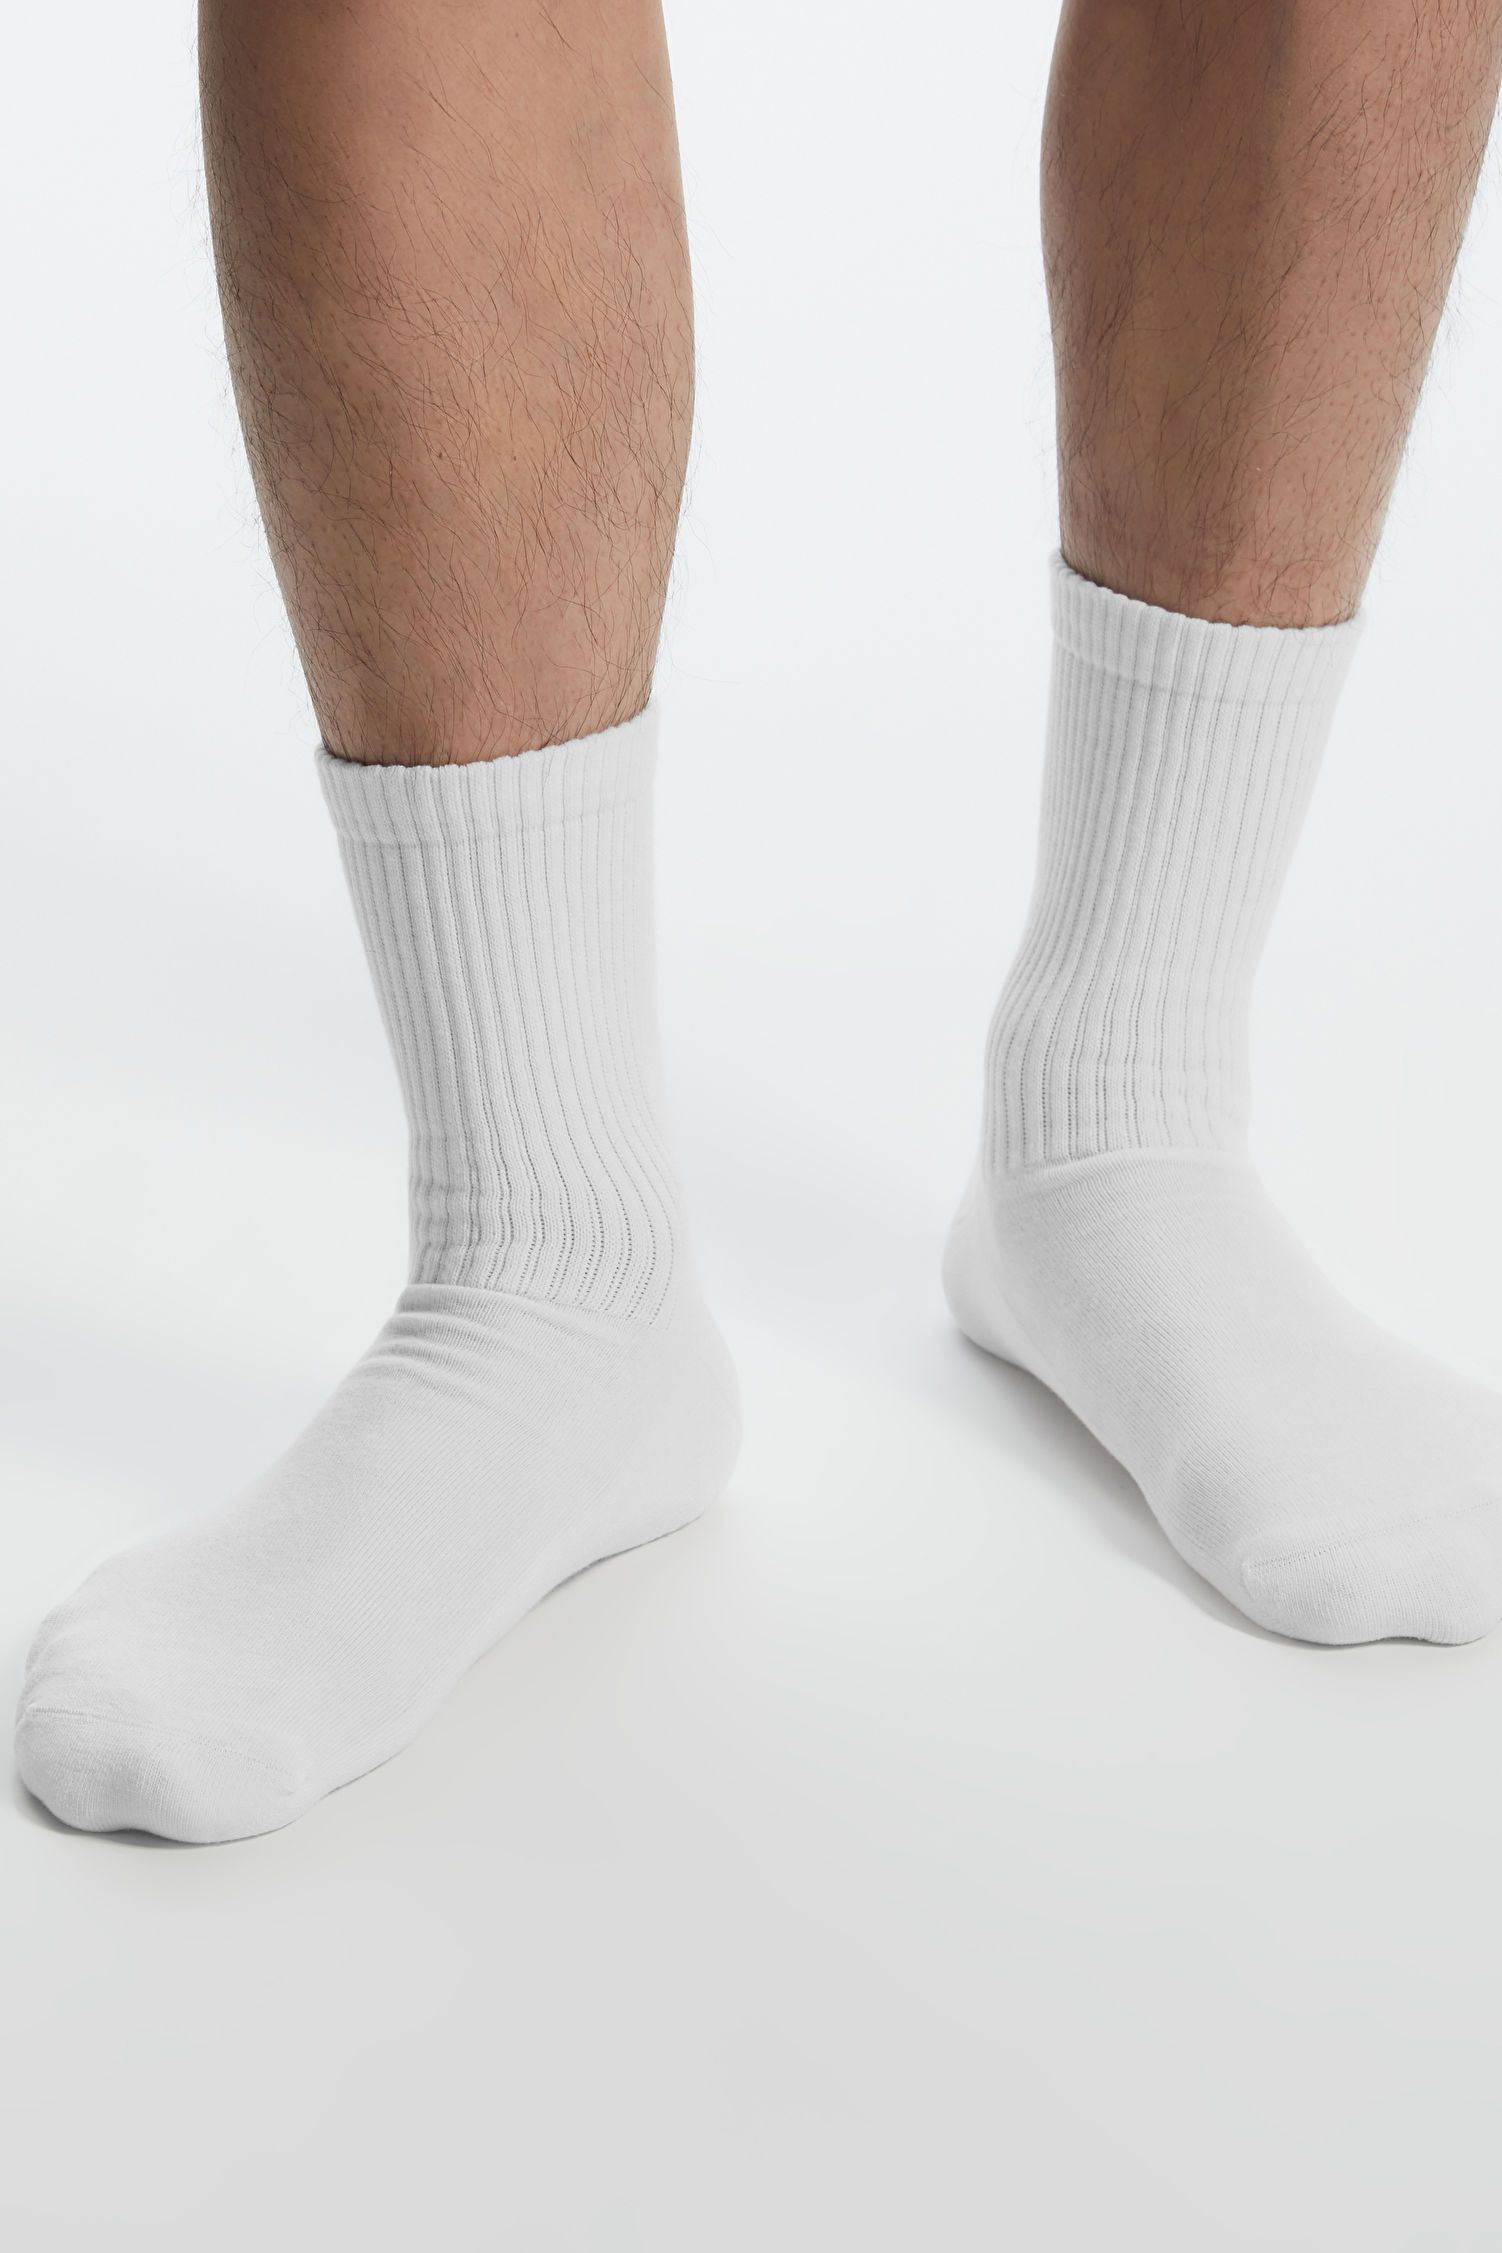 15 Best Socks for Men 2023